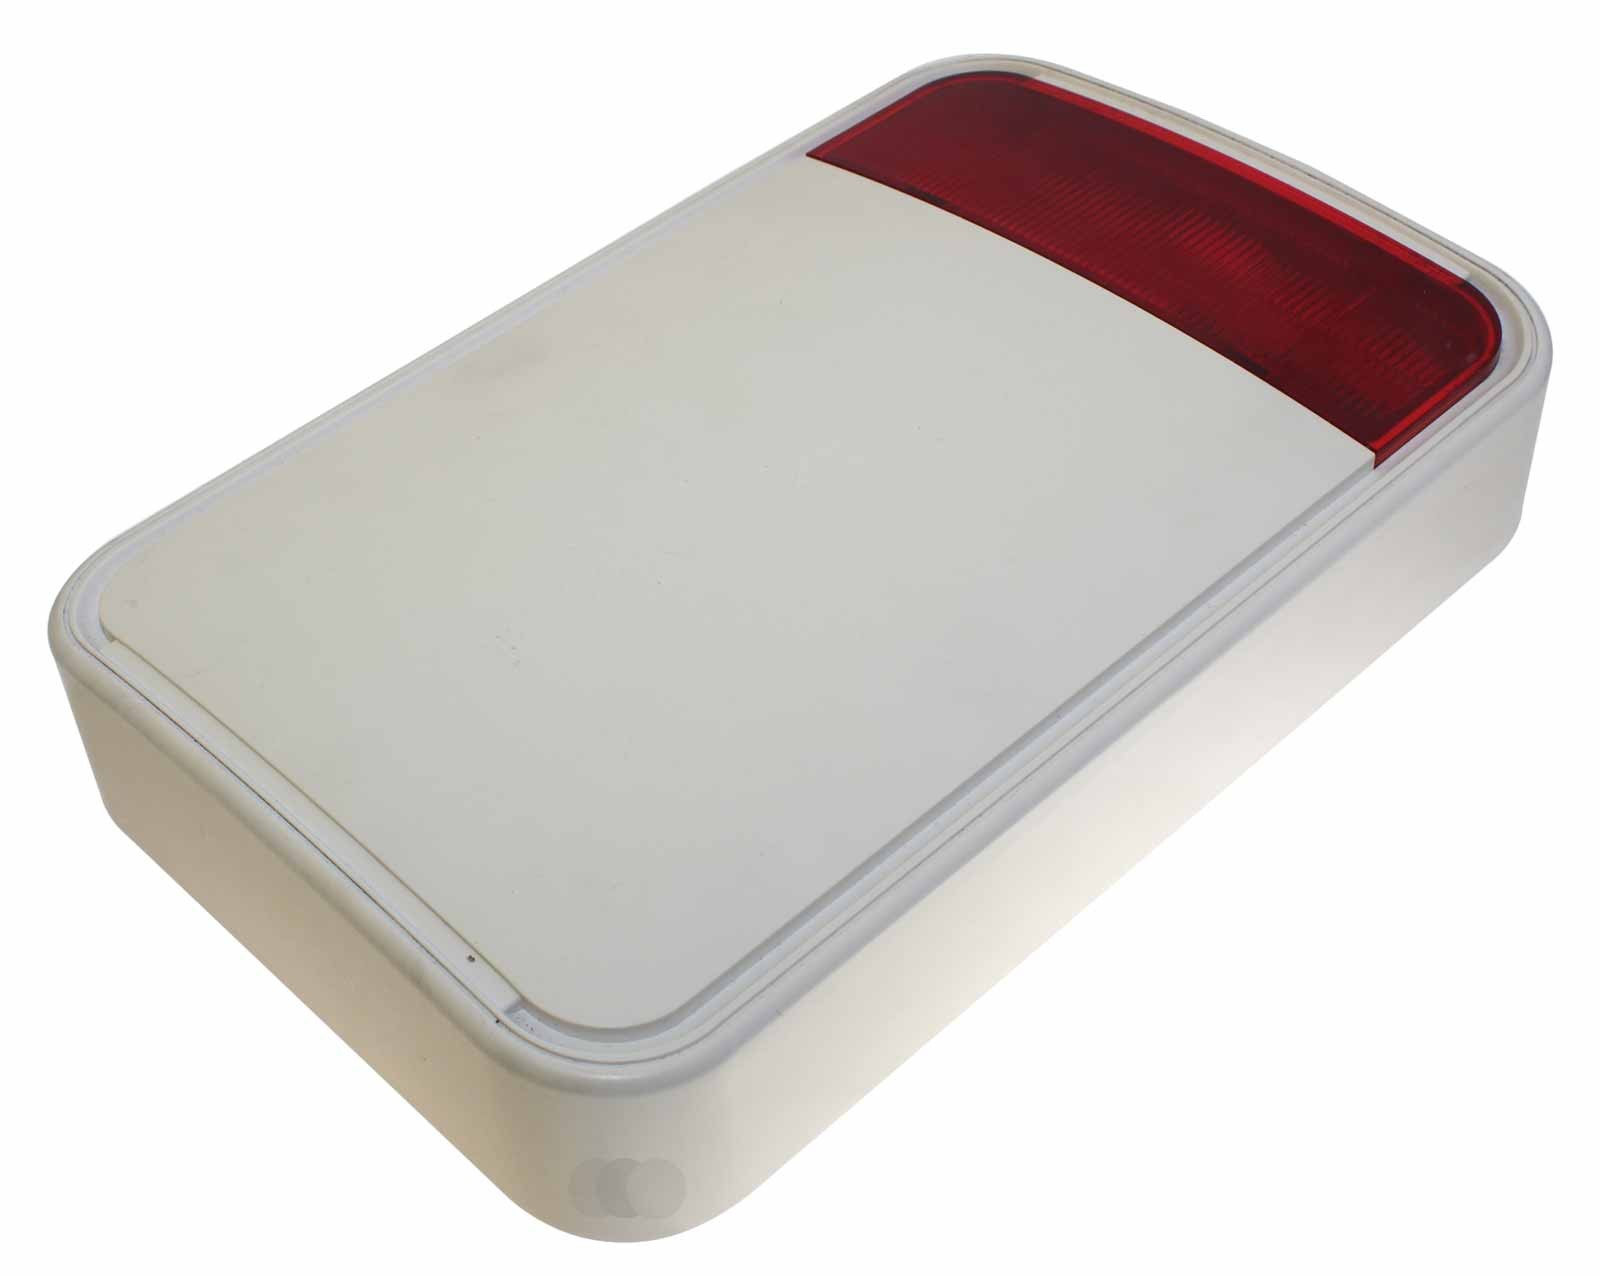 Gebrauchte Visonic MCS-730 (868) RED Fully Wireless Outdoor Siren, Außensirene Blinkleuchte für Alarmanlage, P/N: 90-203035